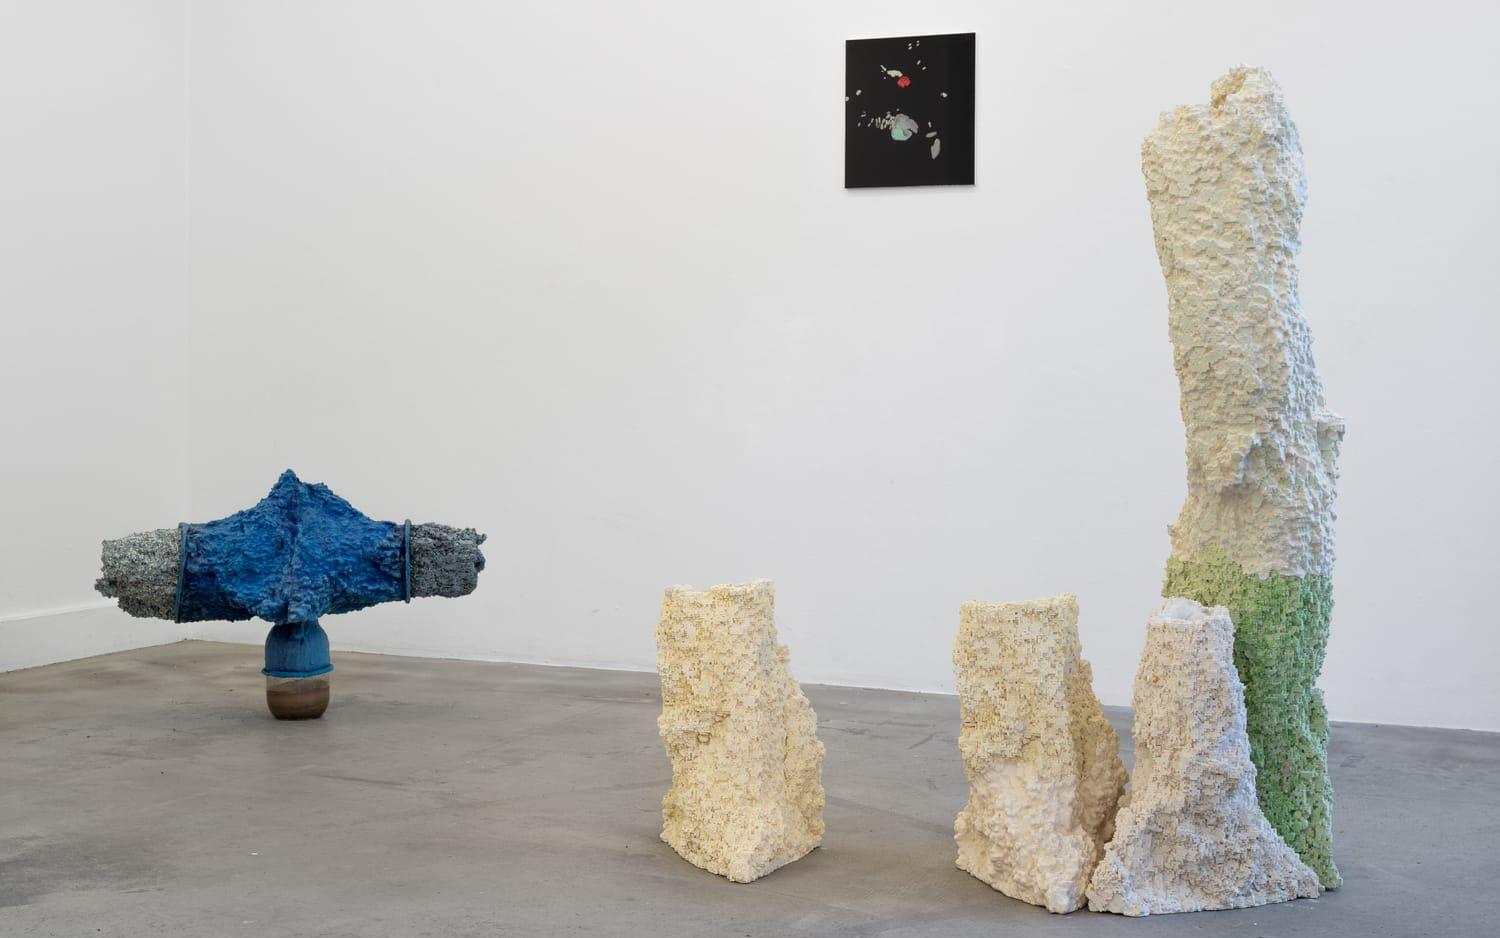 Adrián Espinós Ferreros skulpturer på Galleri Box skapar förbindelser mellan sex och natur. 